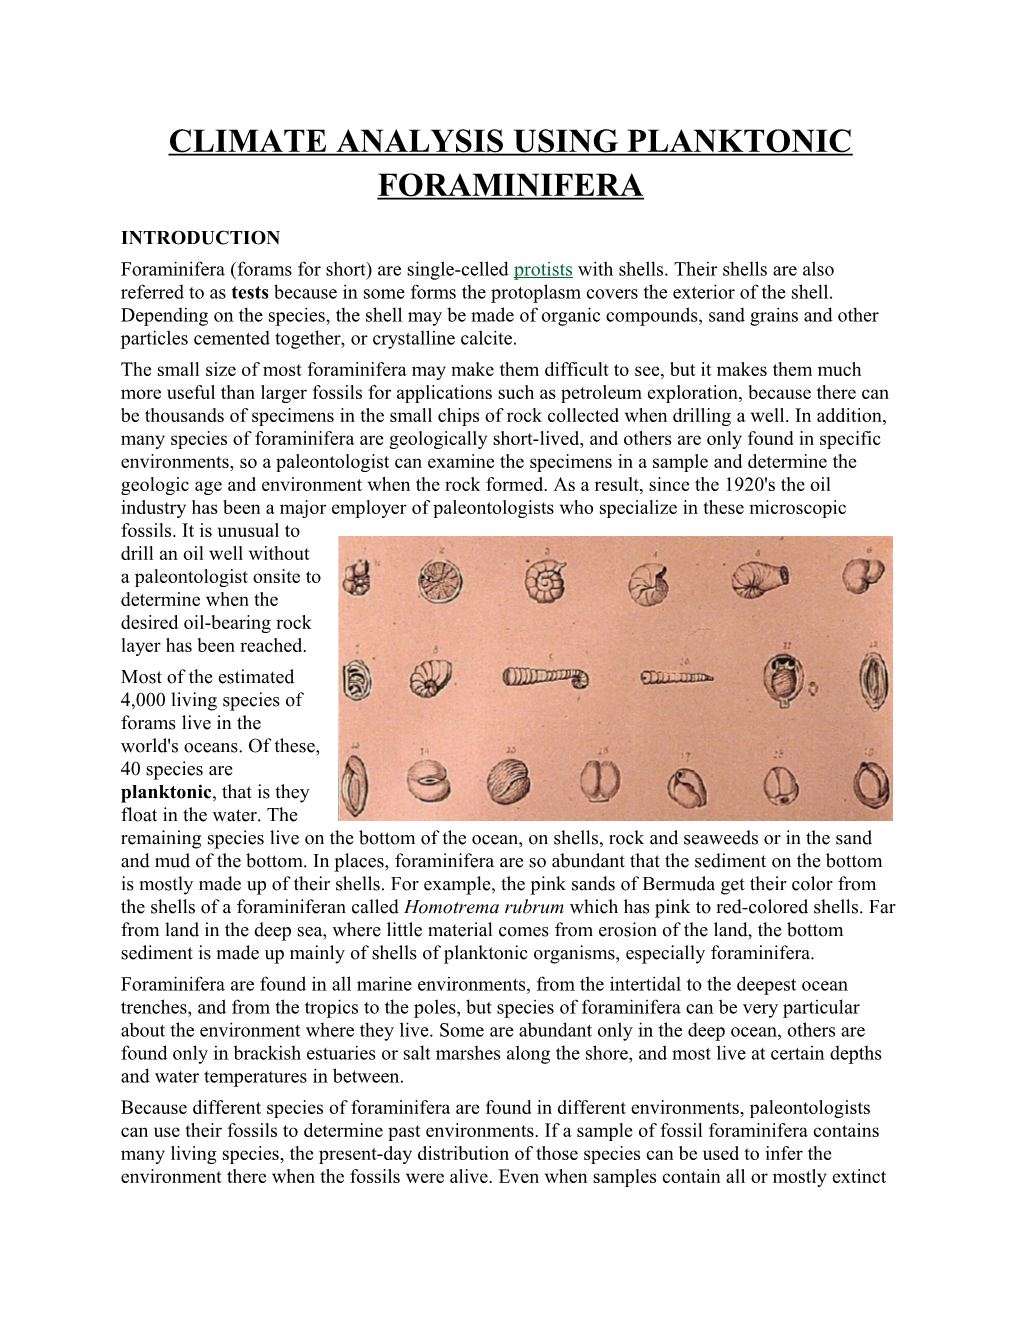 Climate Analysis Using Planktonic Foraminifera